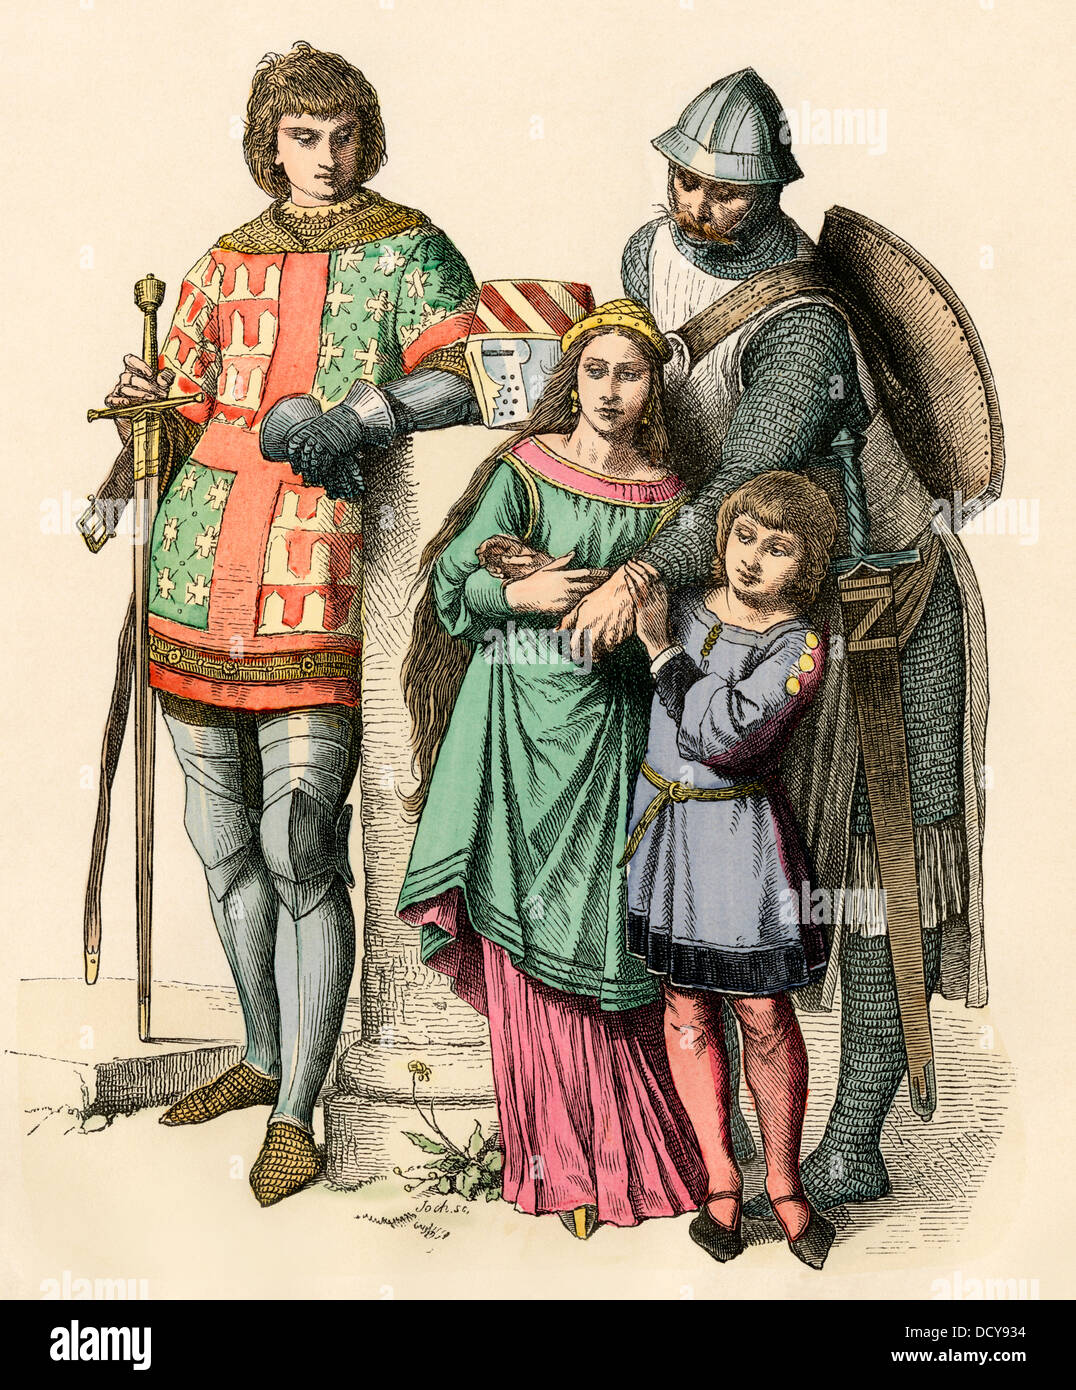 Caballero alemán con su familia, de la Edad Media. Mano de color imprimir Foto de stock